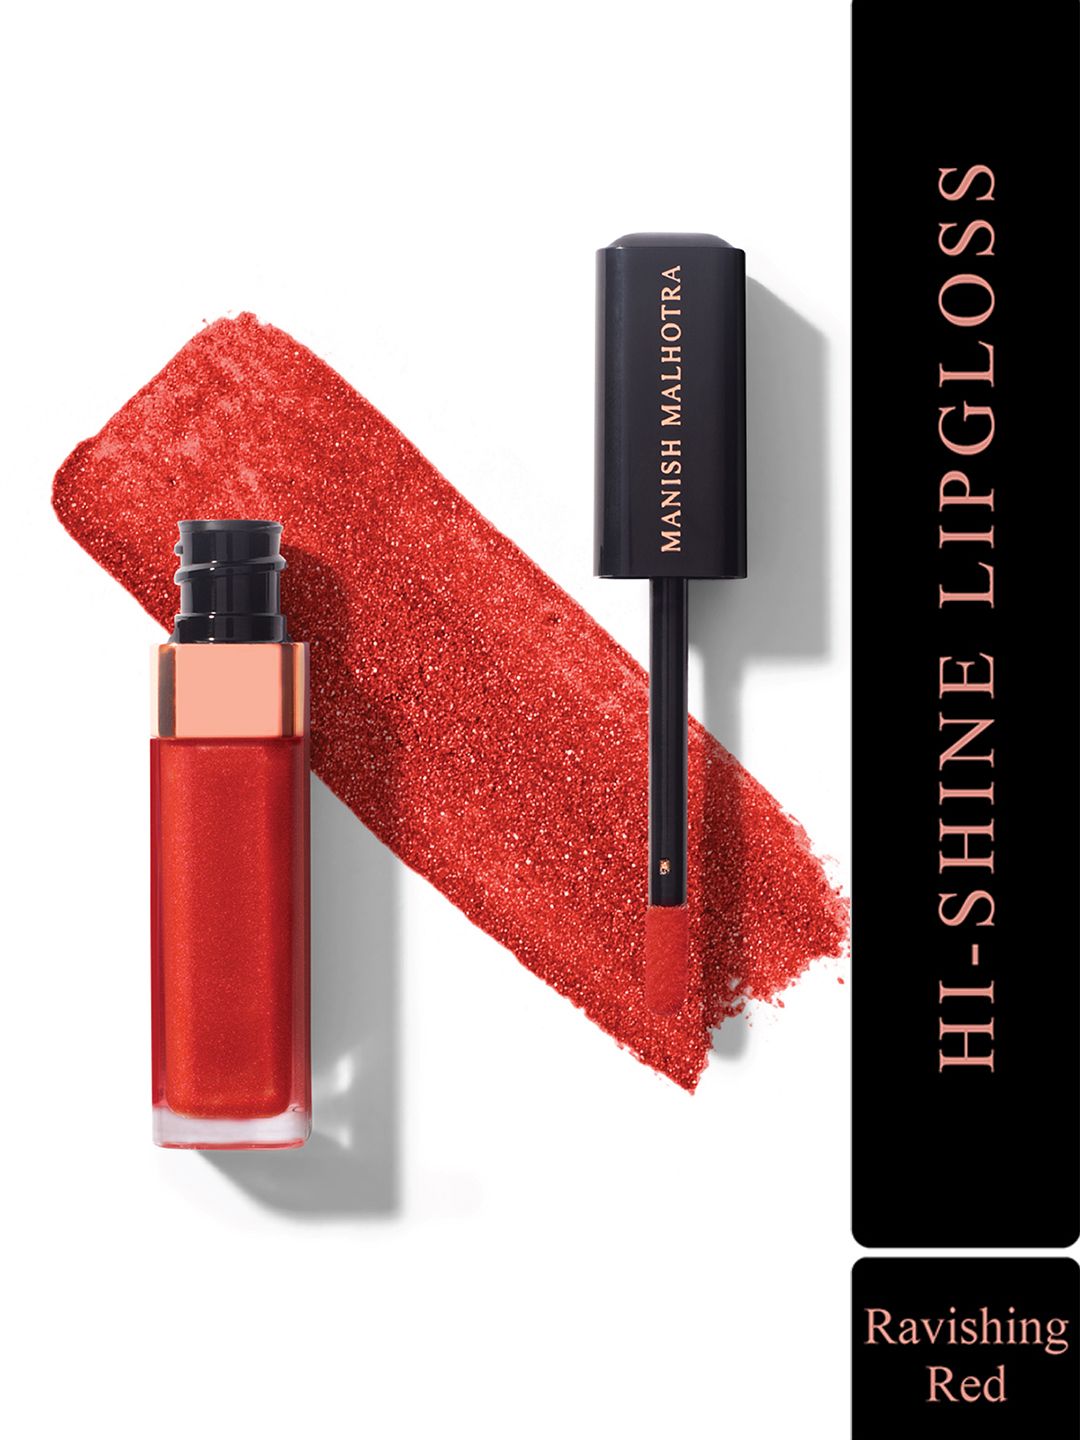 MyGlamm Manish Malhotra Beauty Hi-Shine Lipgloss 5 ml - Ravishing Red Price in India